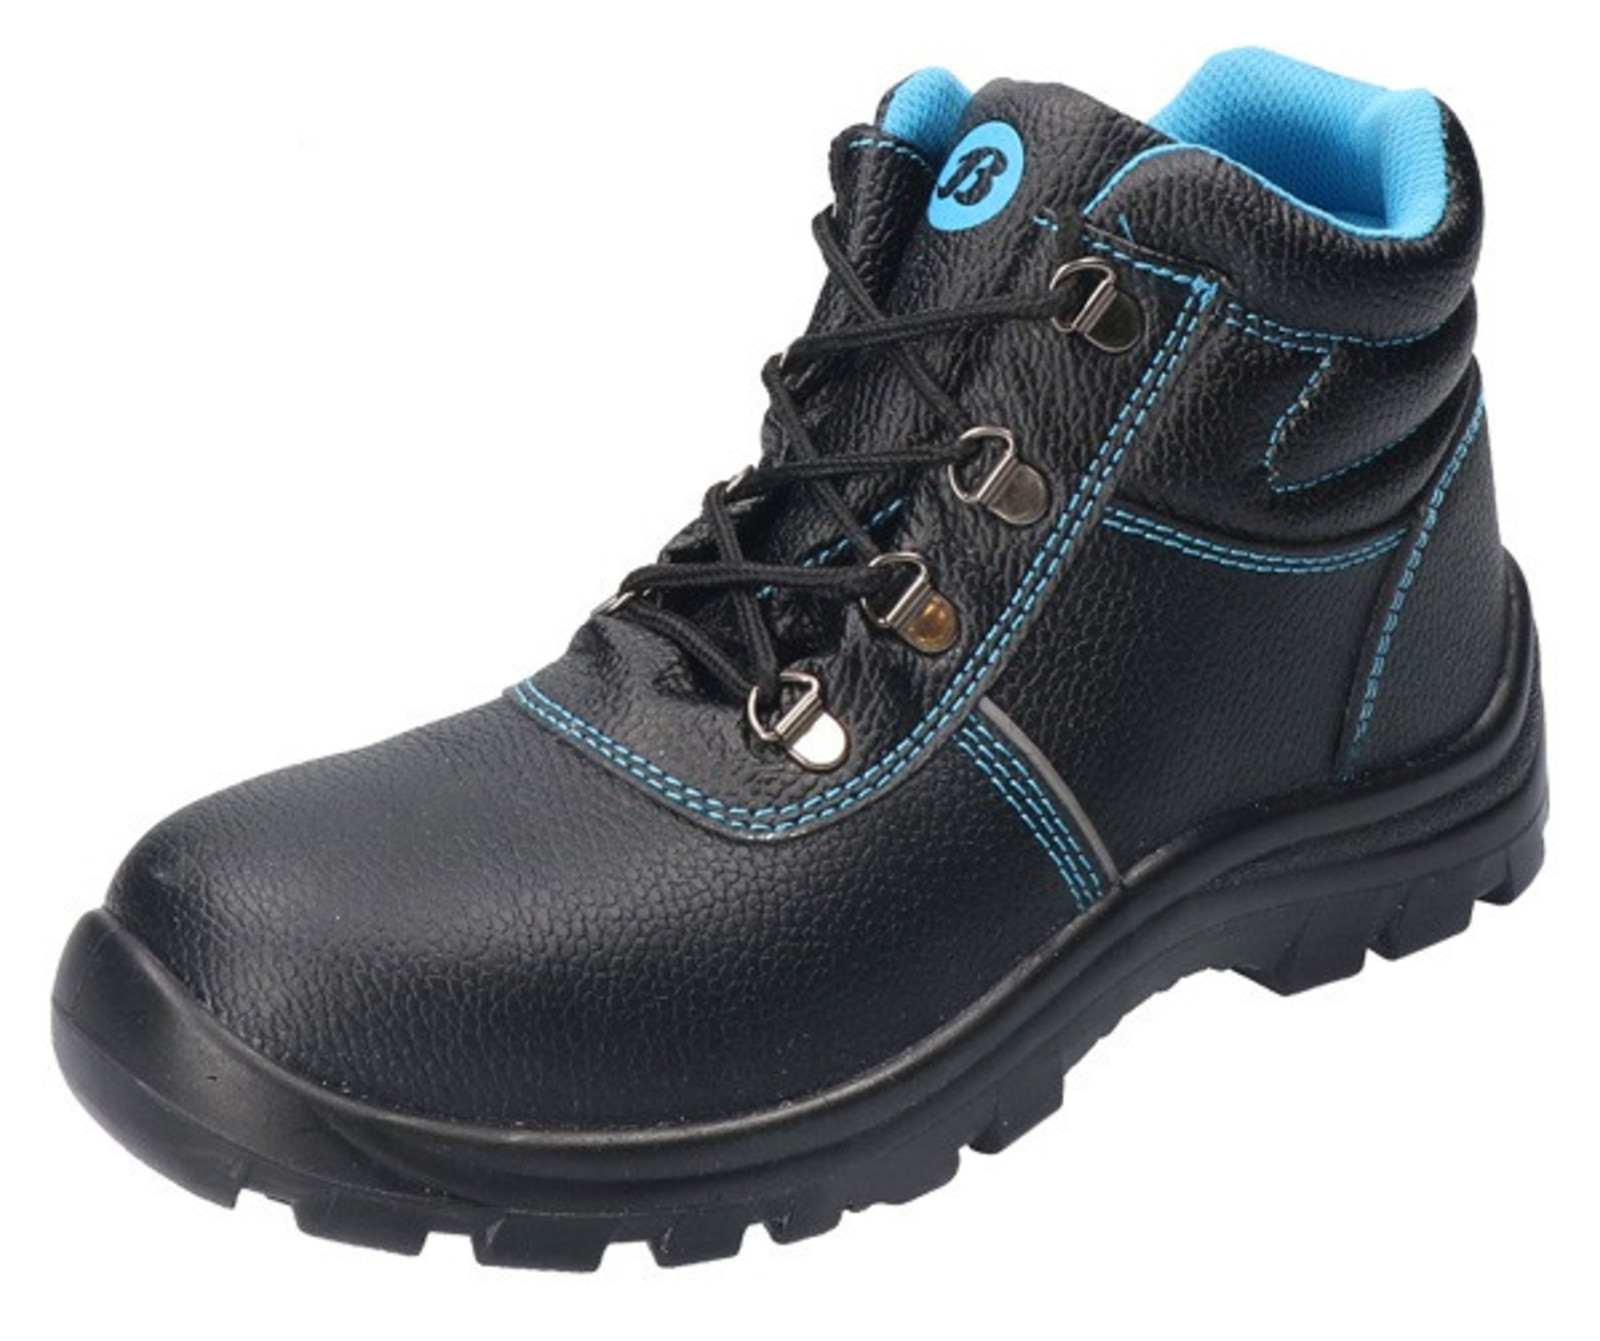 Bezpečnostná obuv Baťa Sirocco S3 - veľkosť: 39, farba: čierna